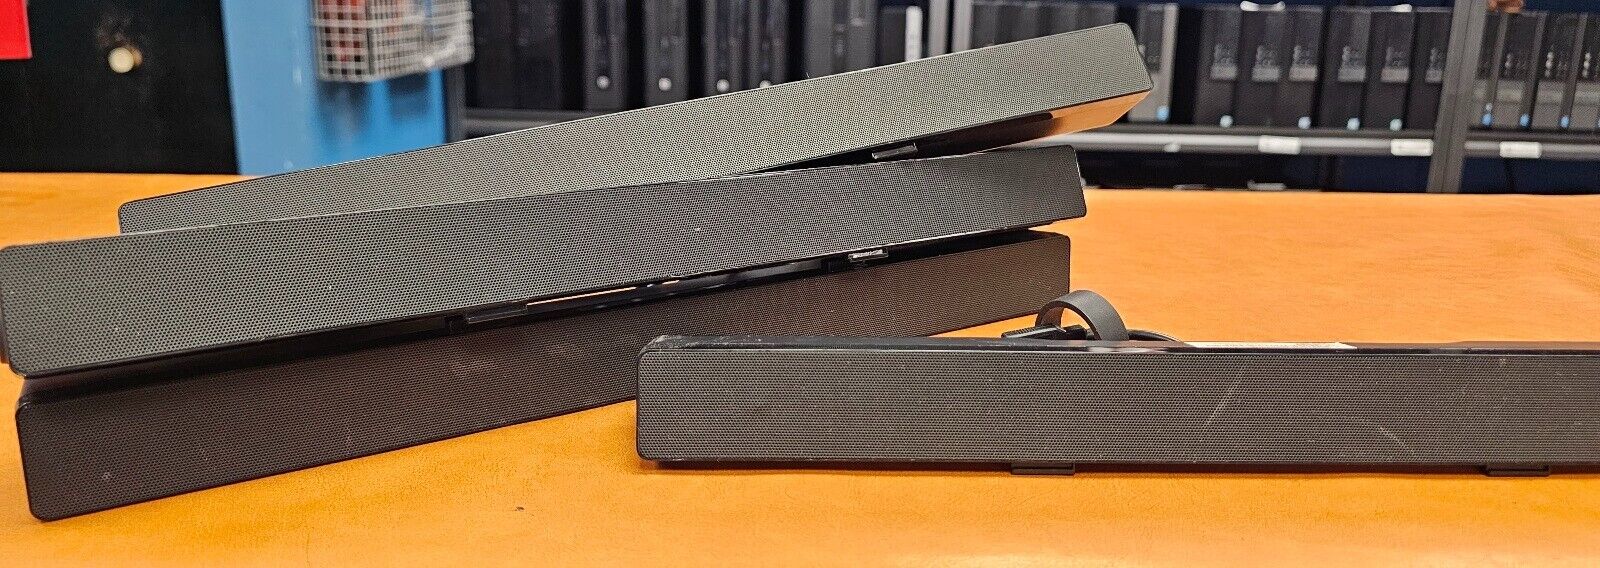 Bundle of 10x Dell AC511 USB Computer Soundbar Speakers - 